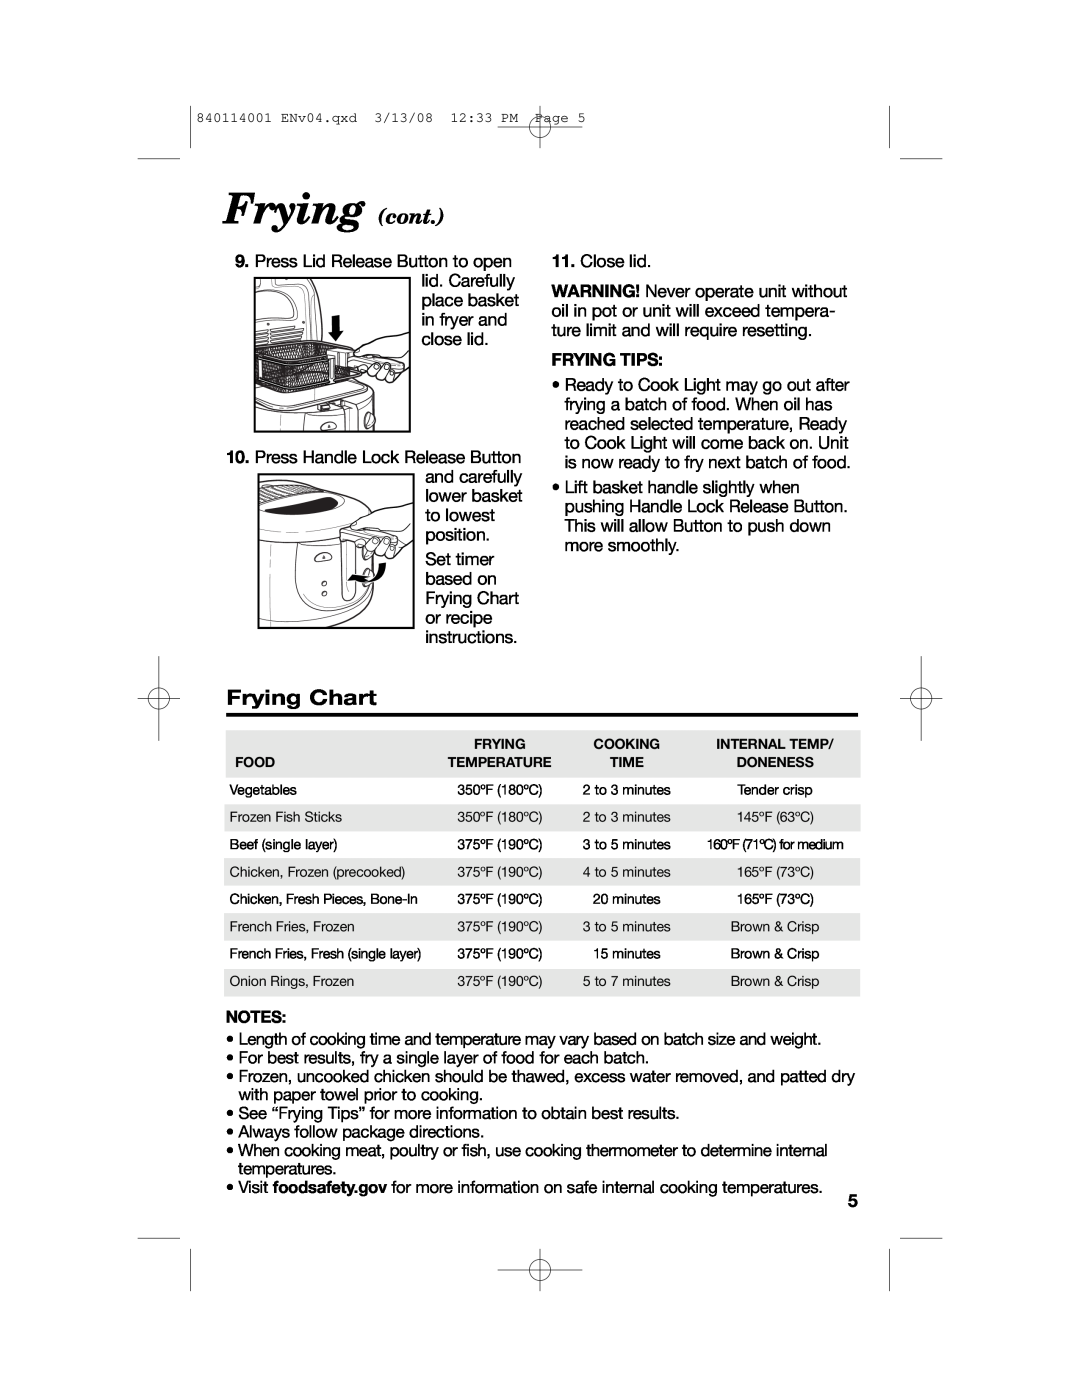 Hamilton Beach 840114001 manual Frying cont, Frying Chart 